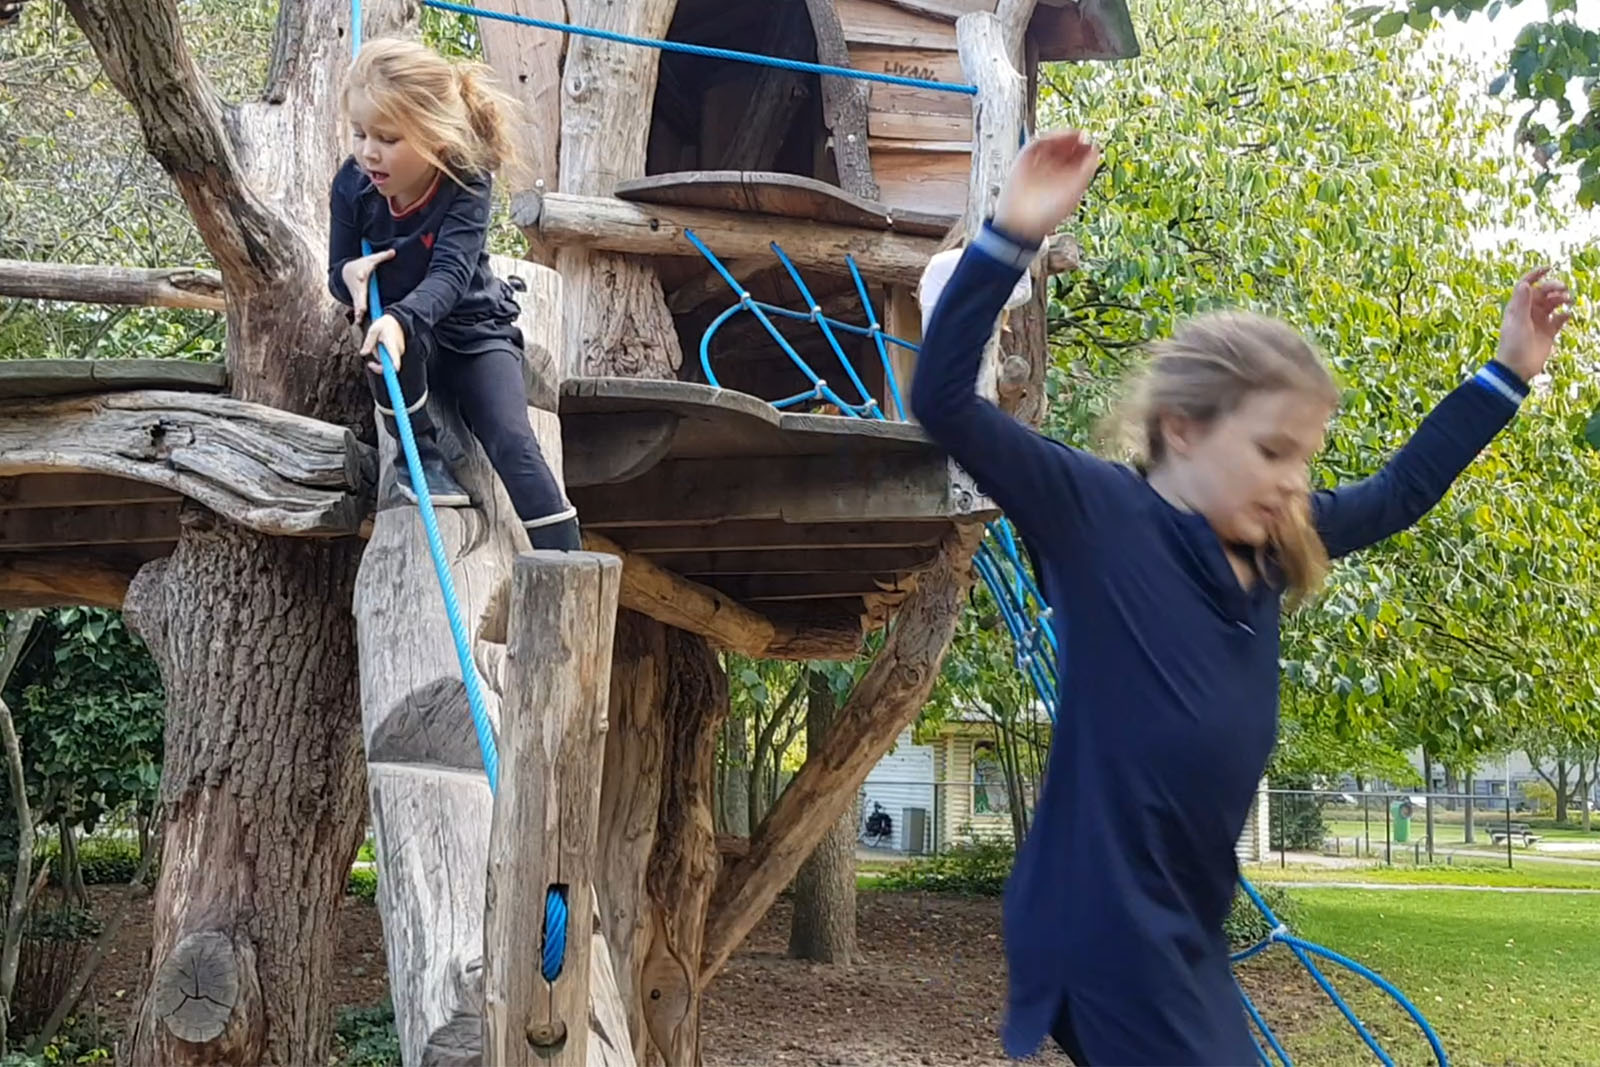 Fonkelnieuw Corona: 40 dingen die je buiten kunt doen met kids | RTV Focus Zwolle LS-84